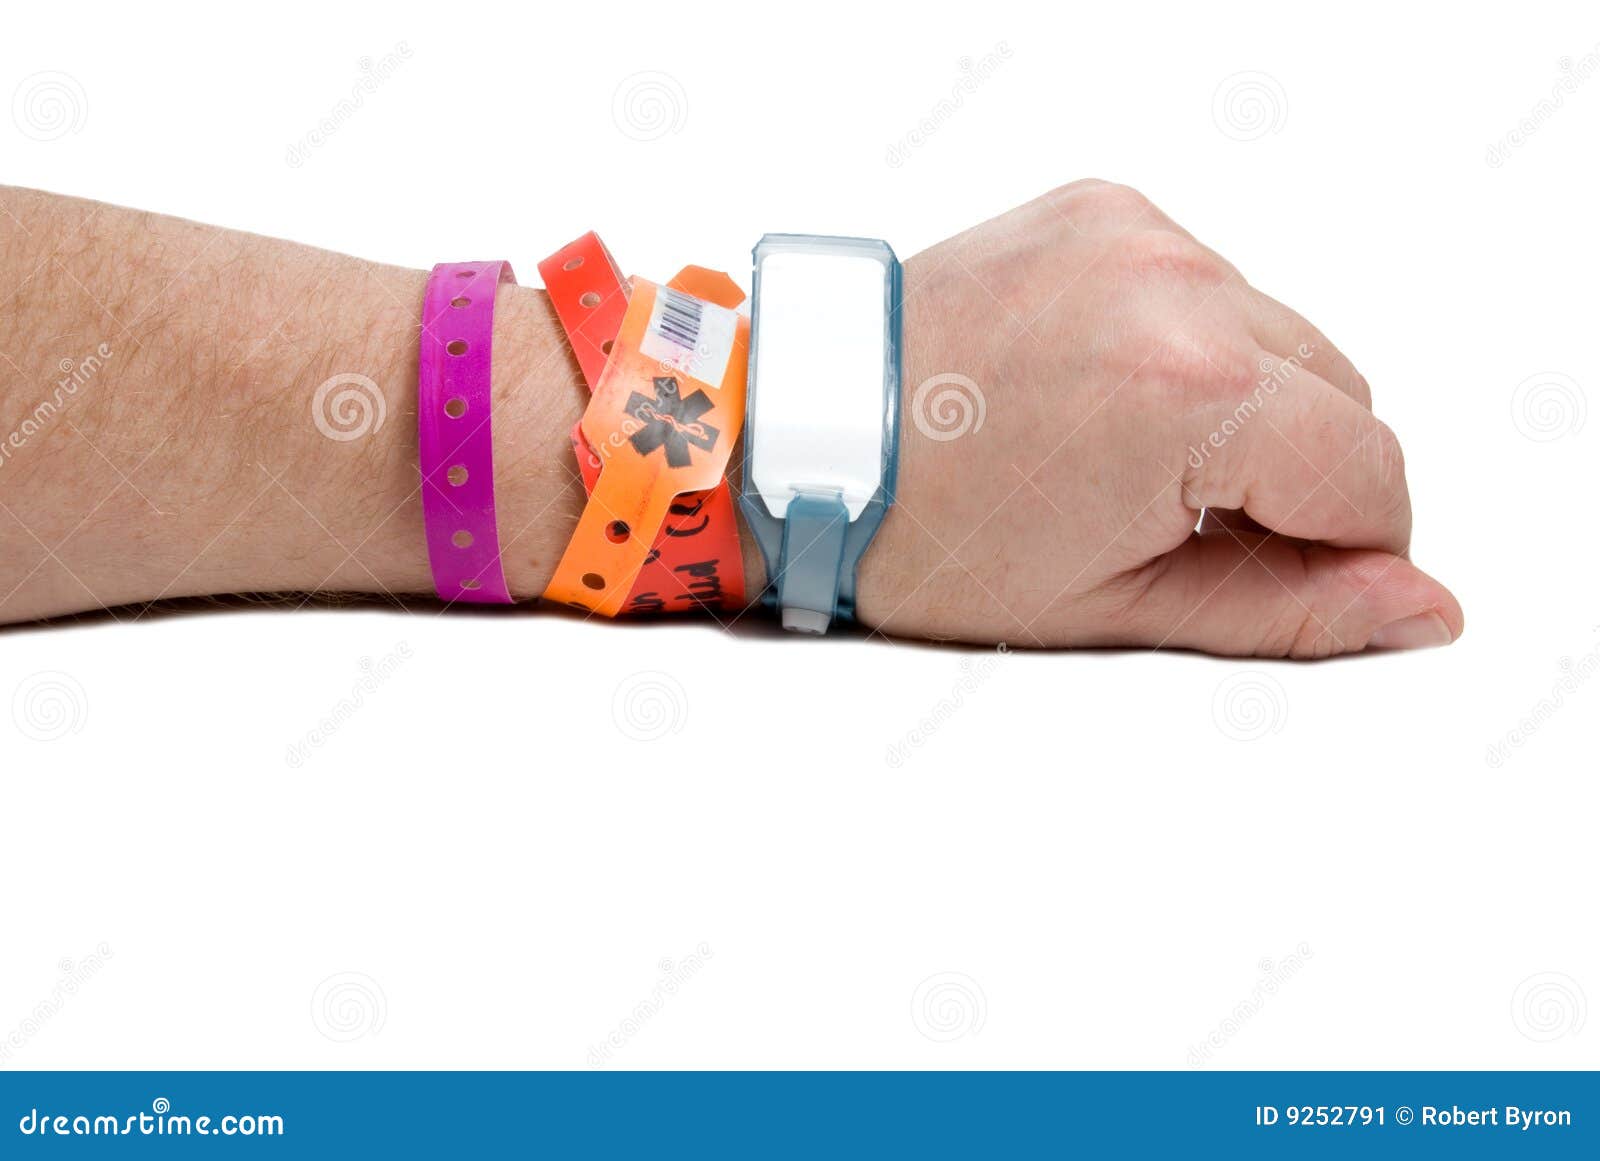 Bracelet D'identification D'hôpital Image stock - Image du personne,  poignet: 9252791